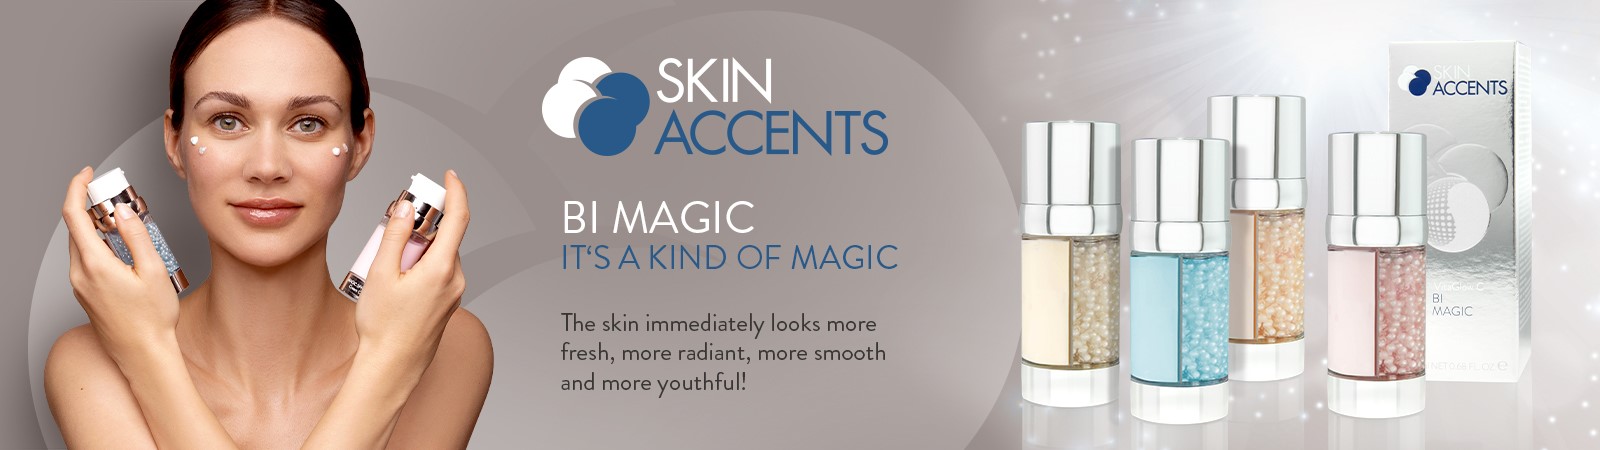 Skin Accents Bi Magic